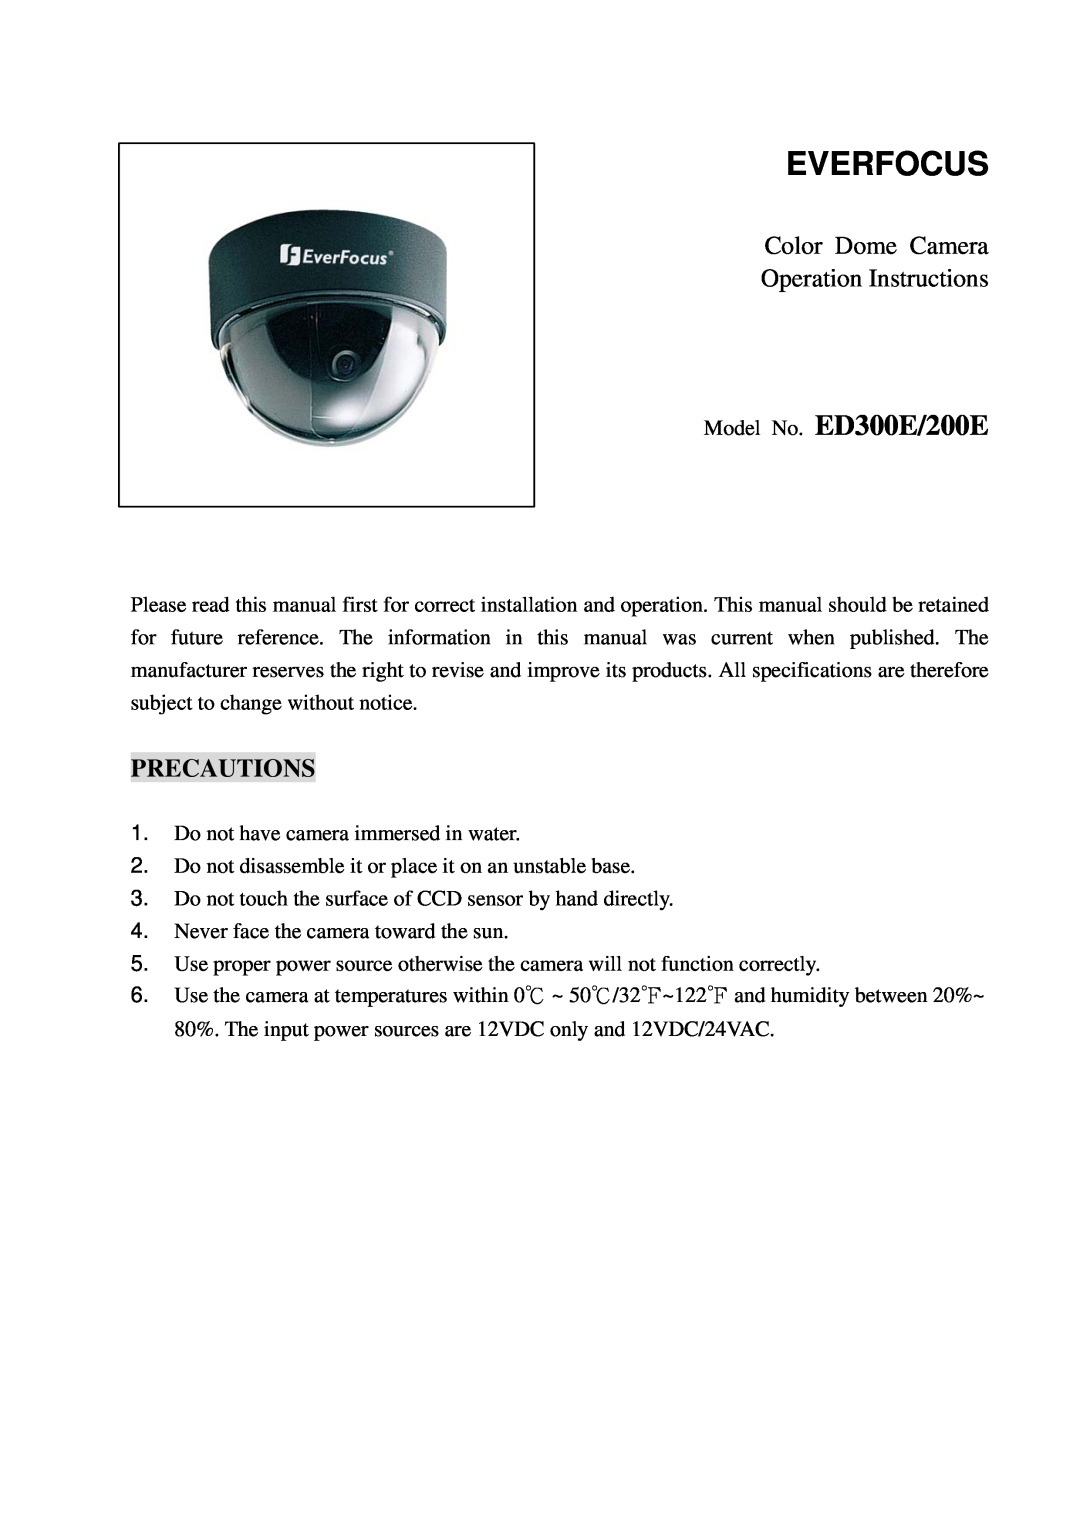 EverFocus ED200E specifications Color Dome Camera Operation Instructions, Precautions, Everfocus, Model No. ED300E/200E 